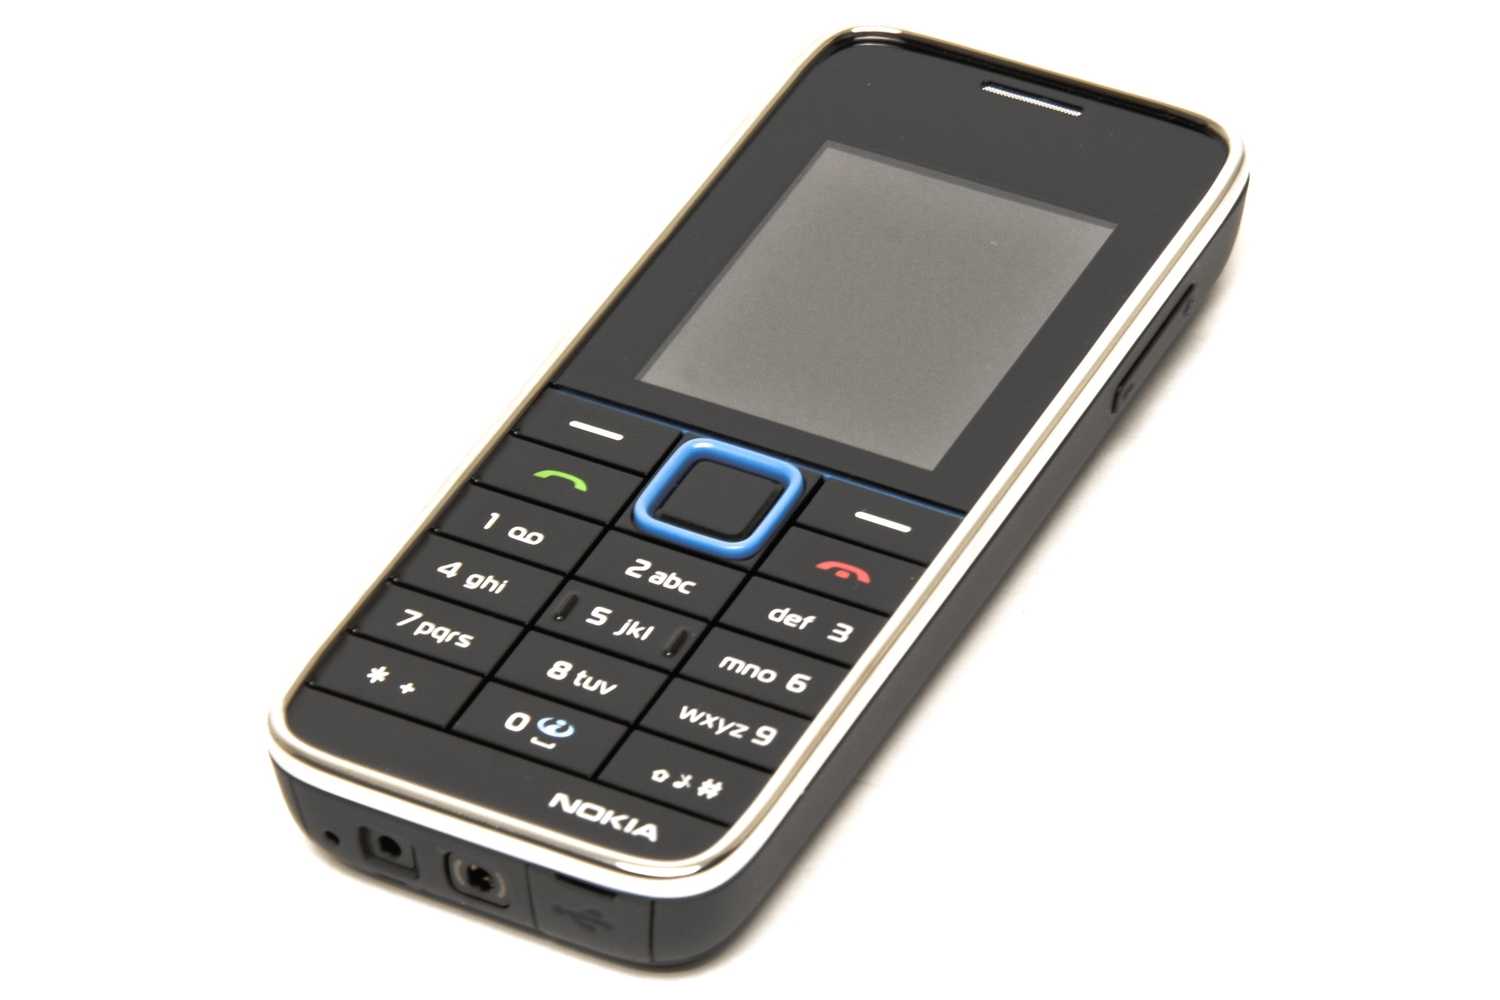 Телефон nokia 3500 classic pink — купить, цена и характеристики, отзывы